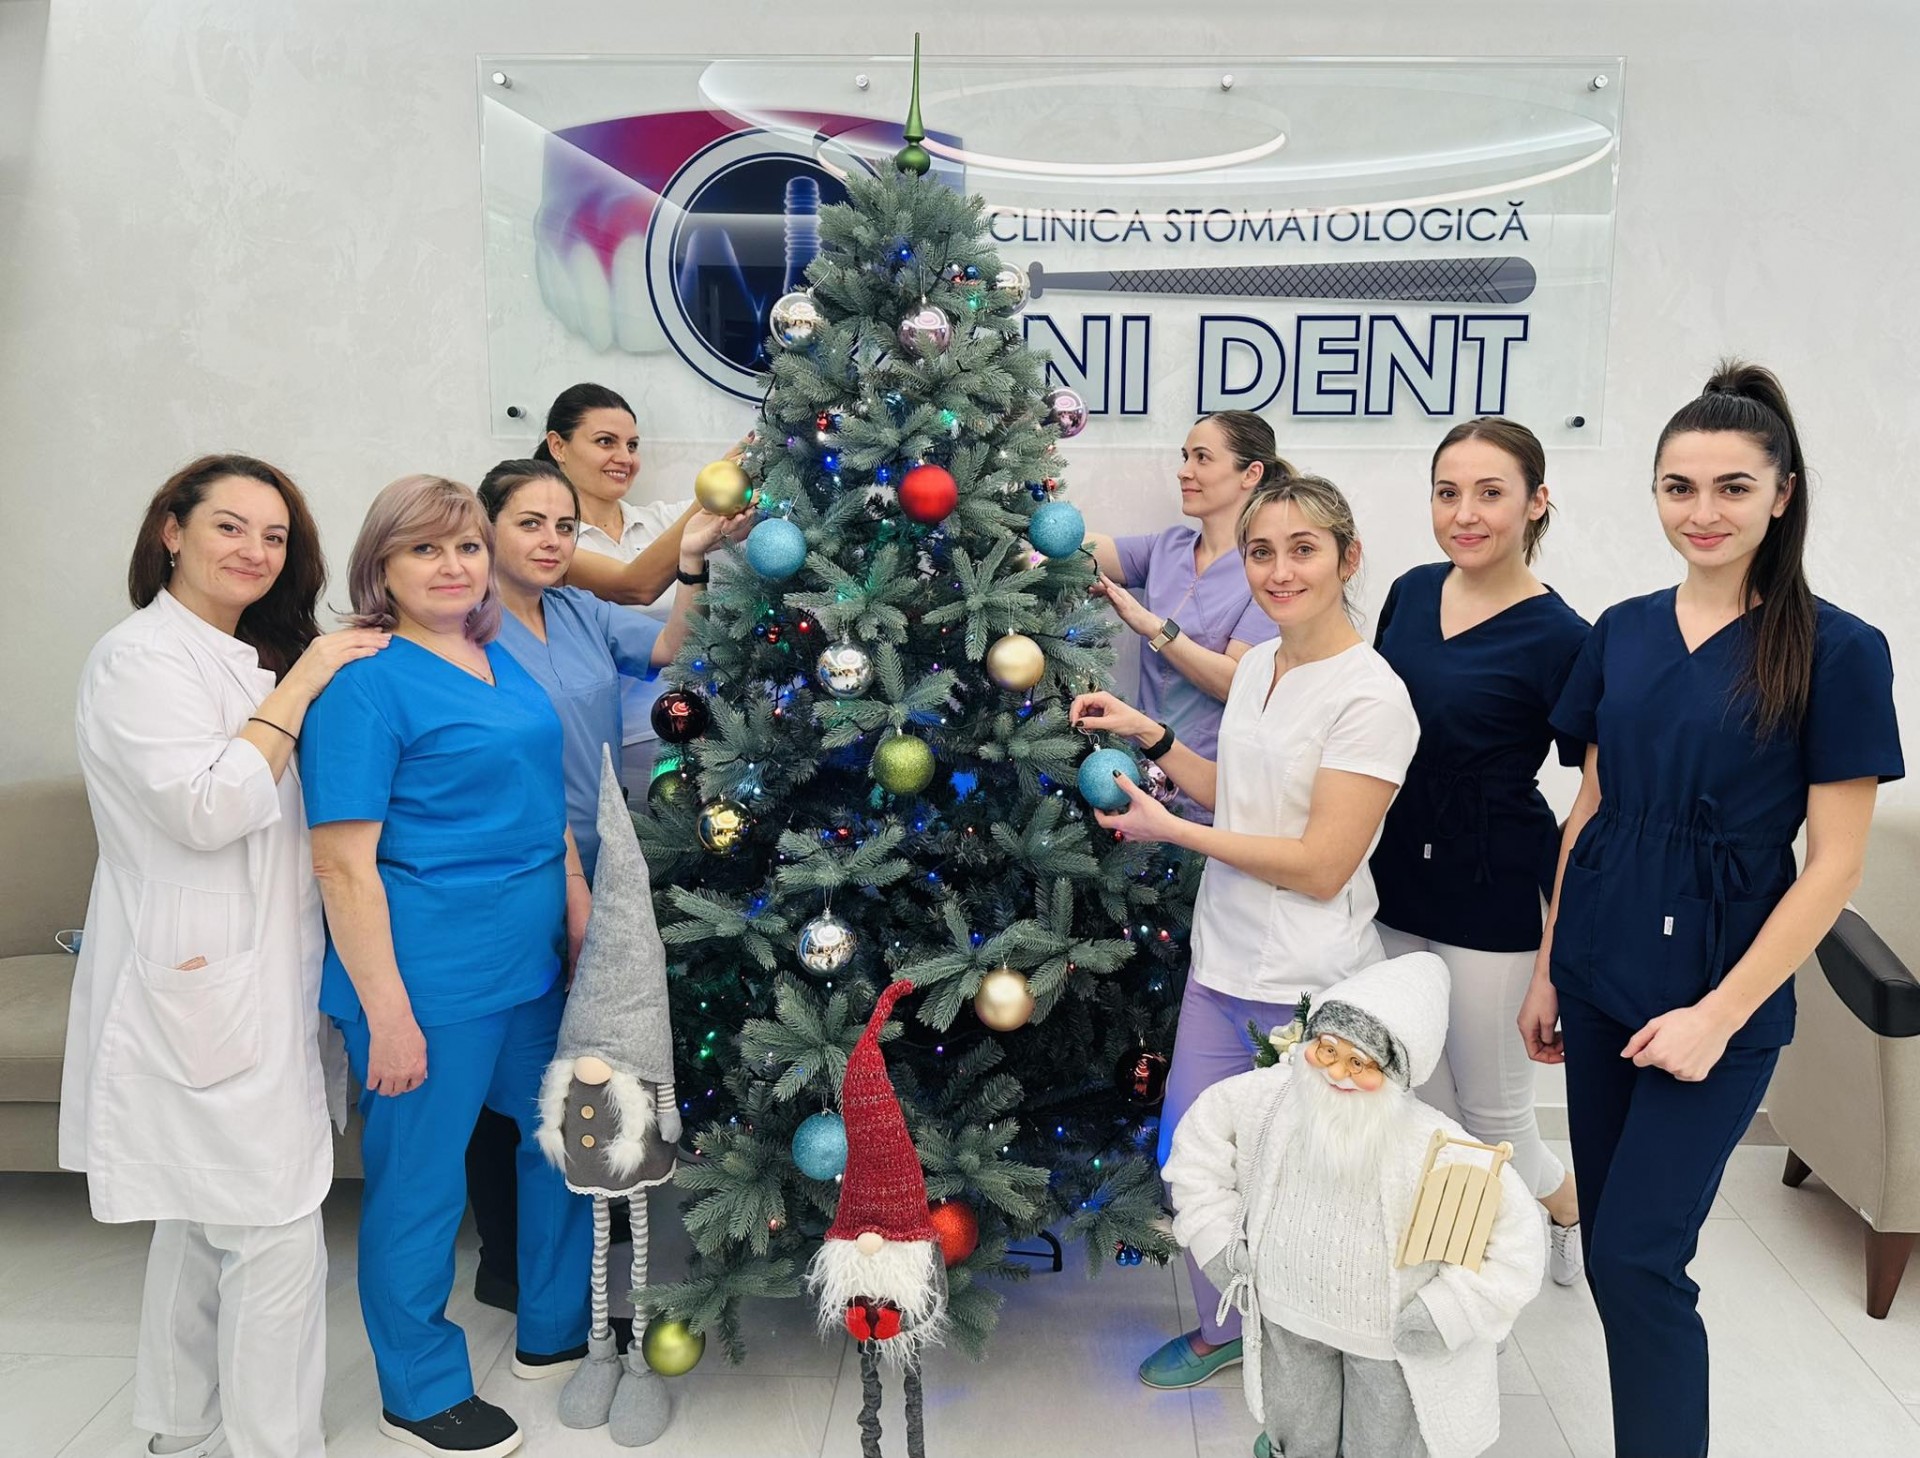 Clinica stomatologică ”Omni Dent” a îmbrăcat hainele de sărbătoare‼️